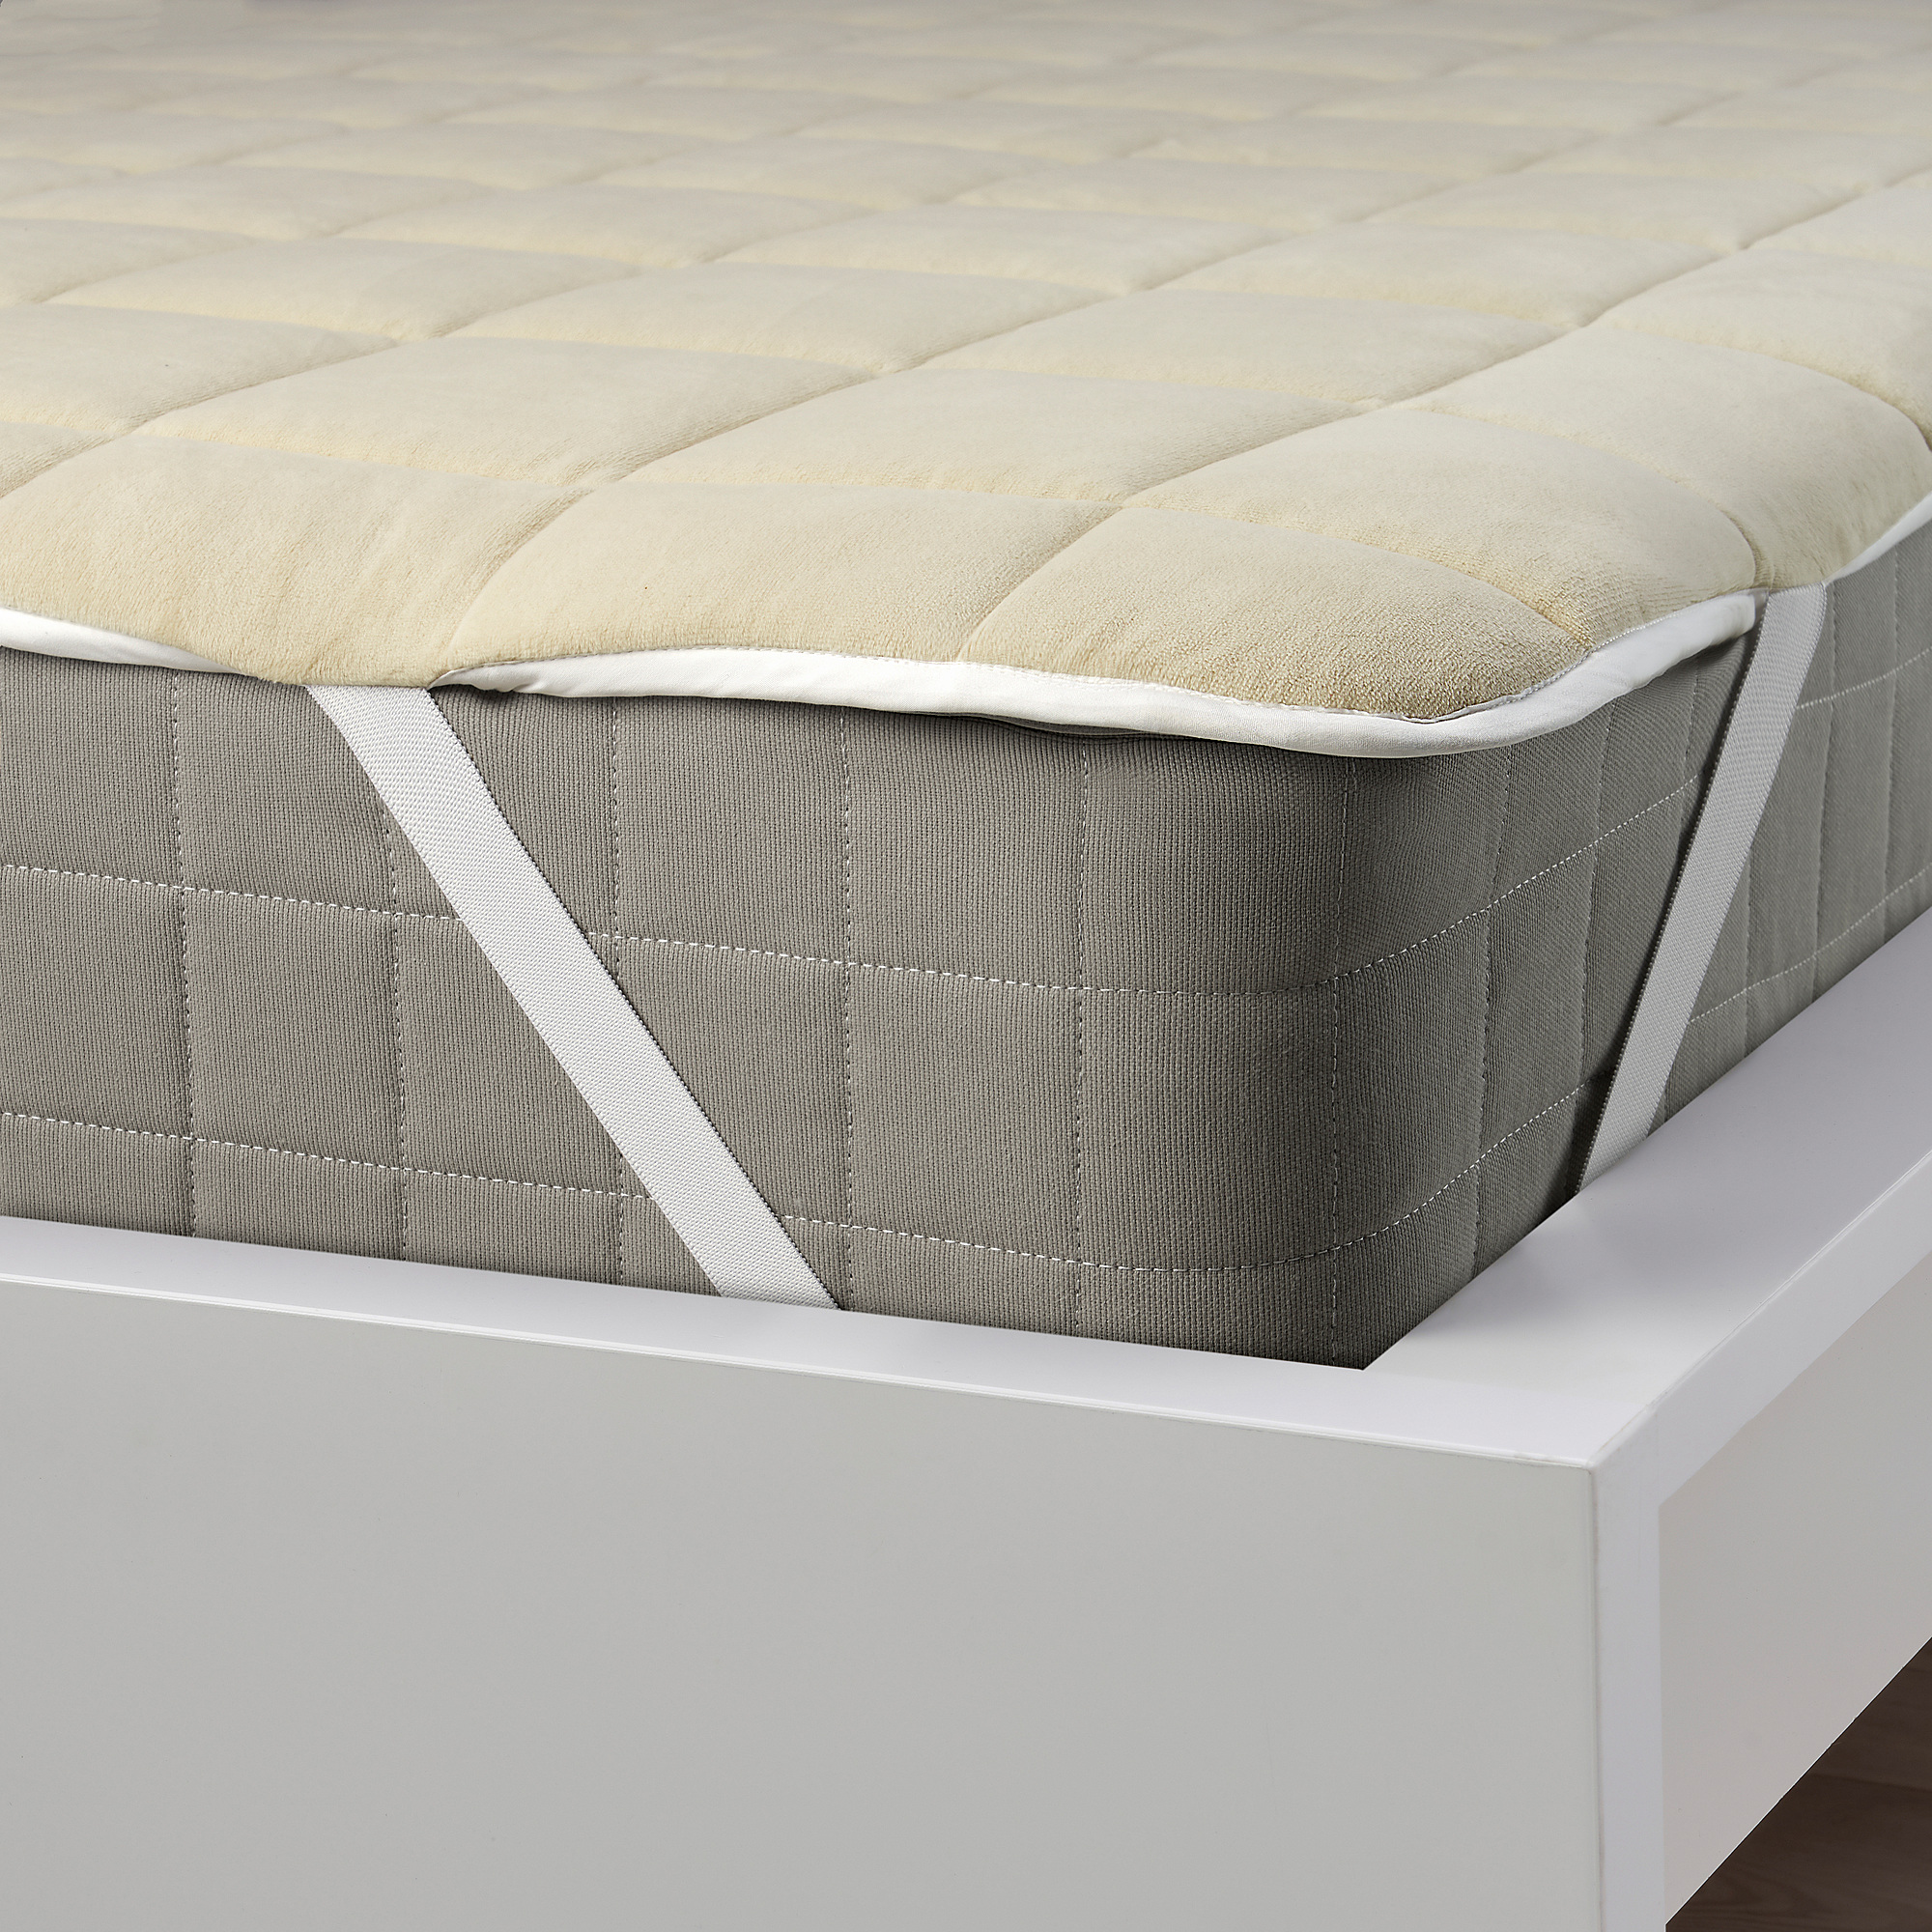 KEJSAROLVON mattress protector